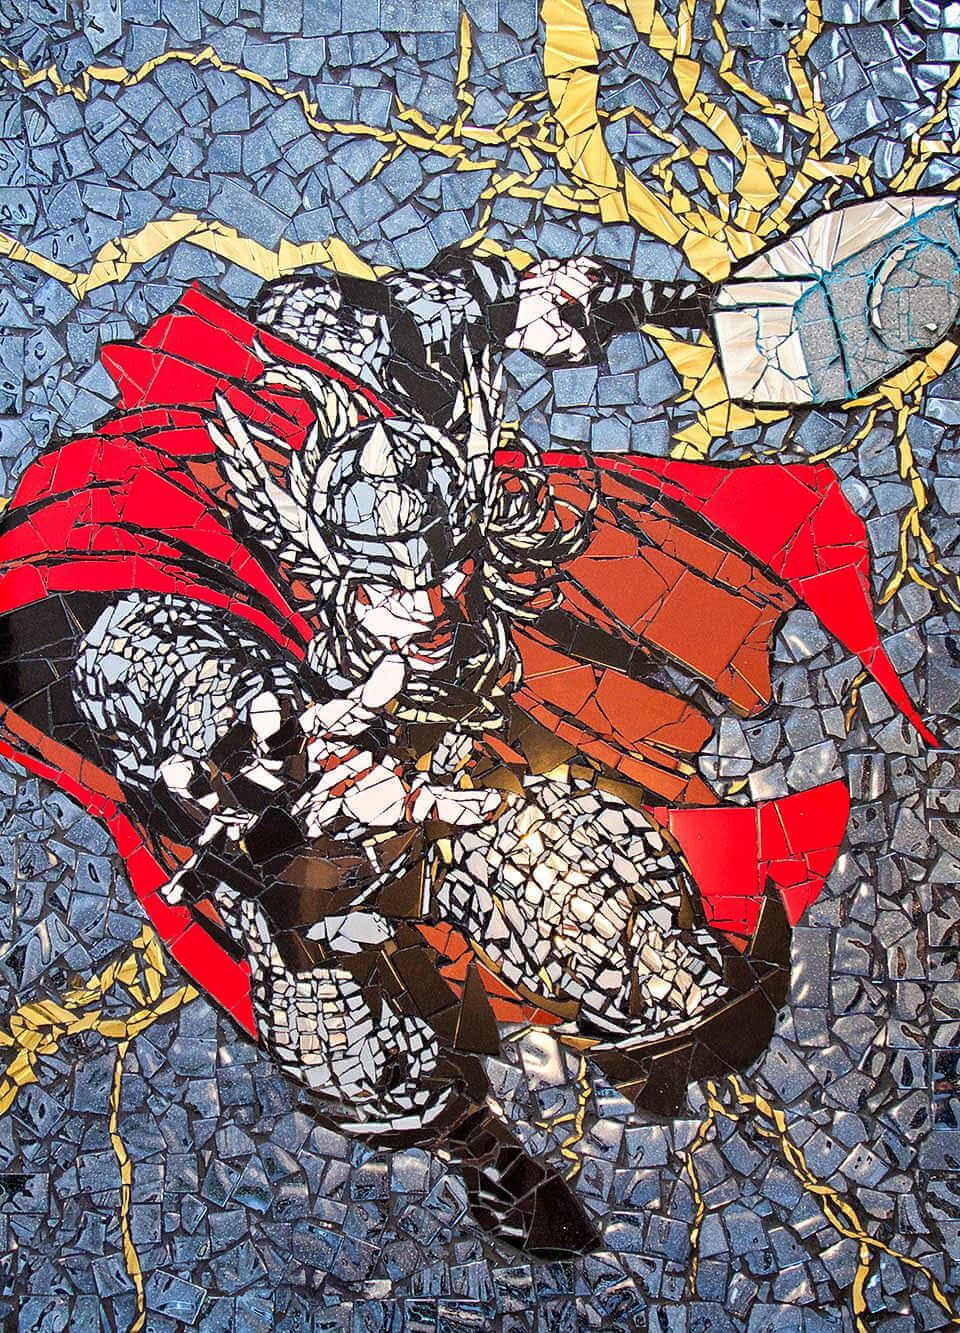 Impresionante mosaico de superheroe thor